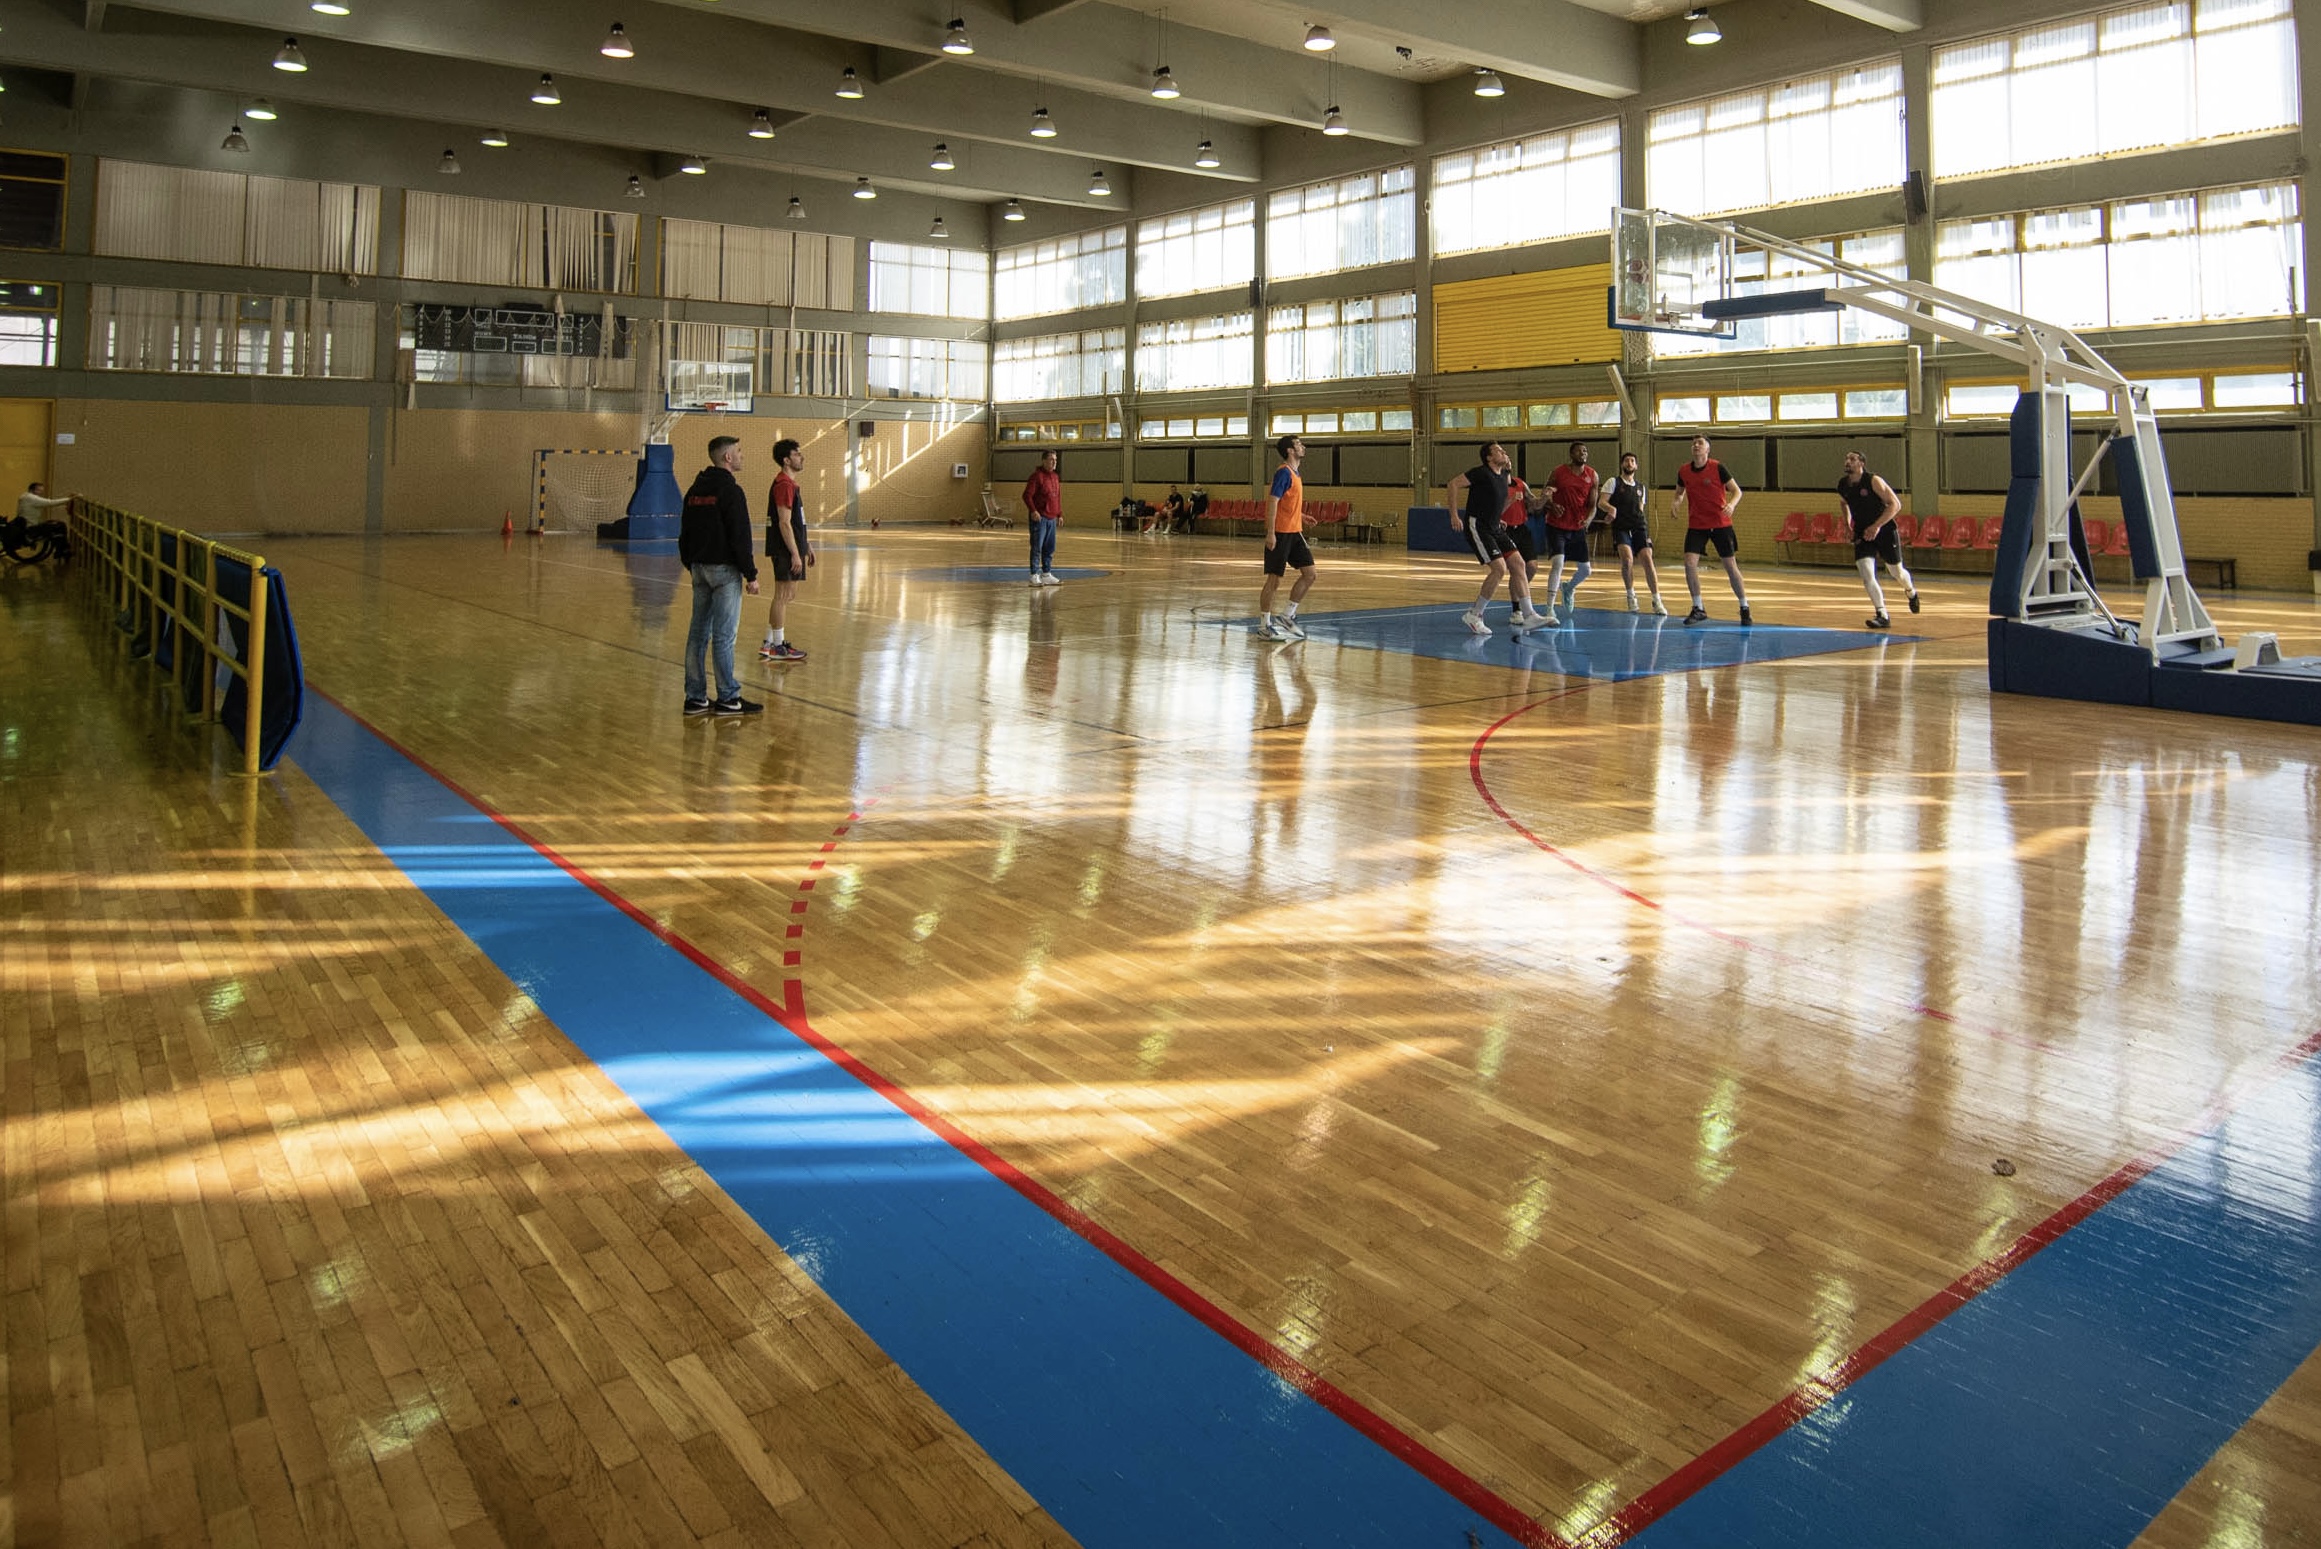 Δήμος Αθηναίων: Αναβαθμίστηκε το κλειστό γήπεδο μπάσκετ «Παναγιώτης Γκάζγκας» στο Μετς 